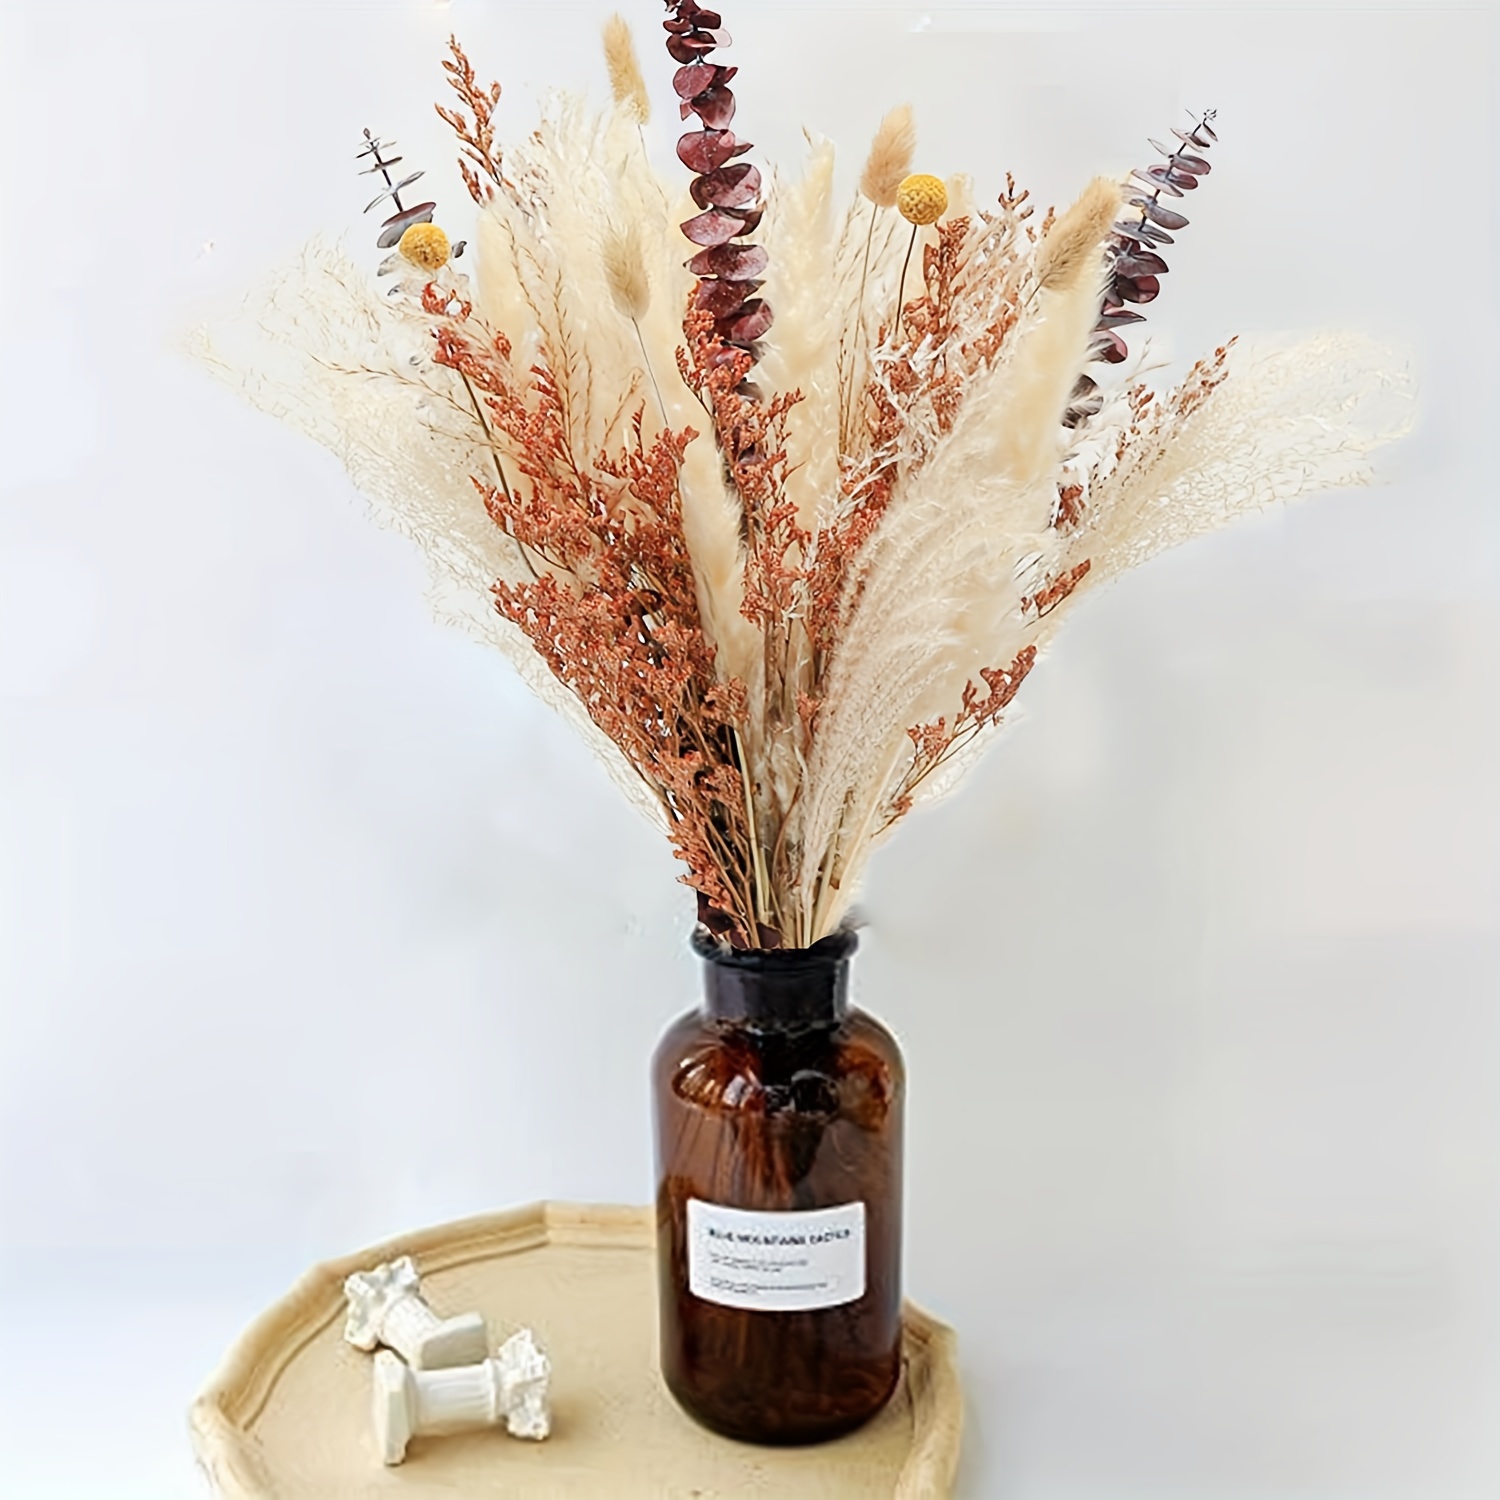 Mini Dried Flowers - Magenta  Flores secas, Flores pequeñas, Flores